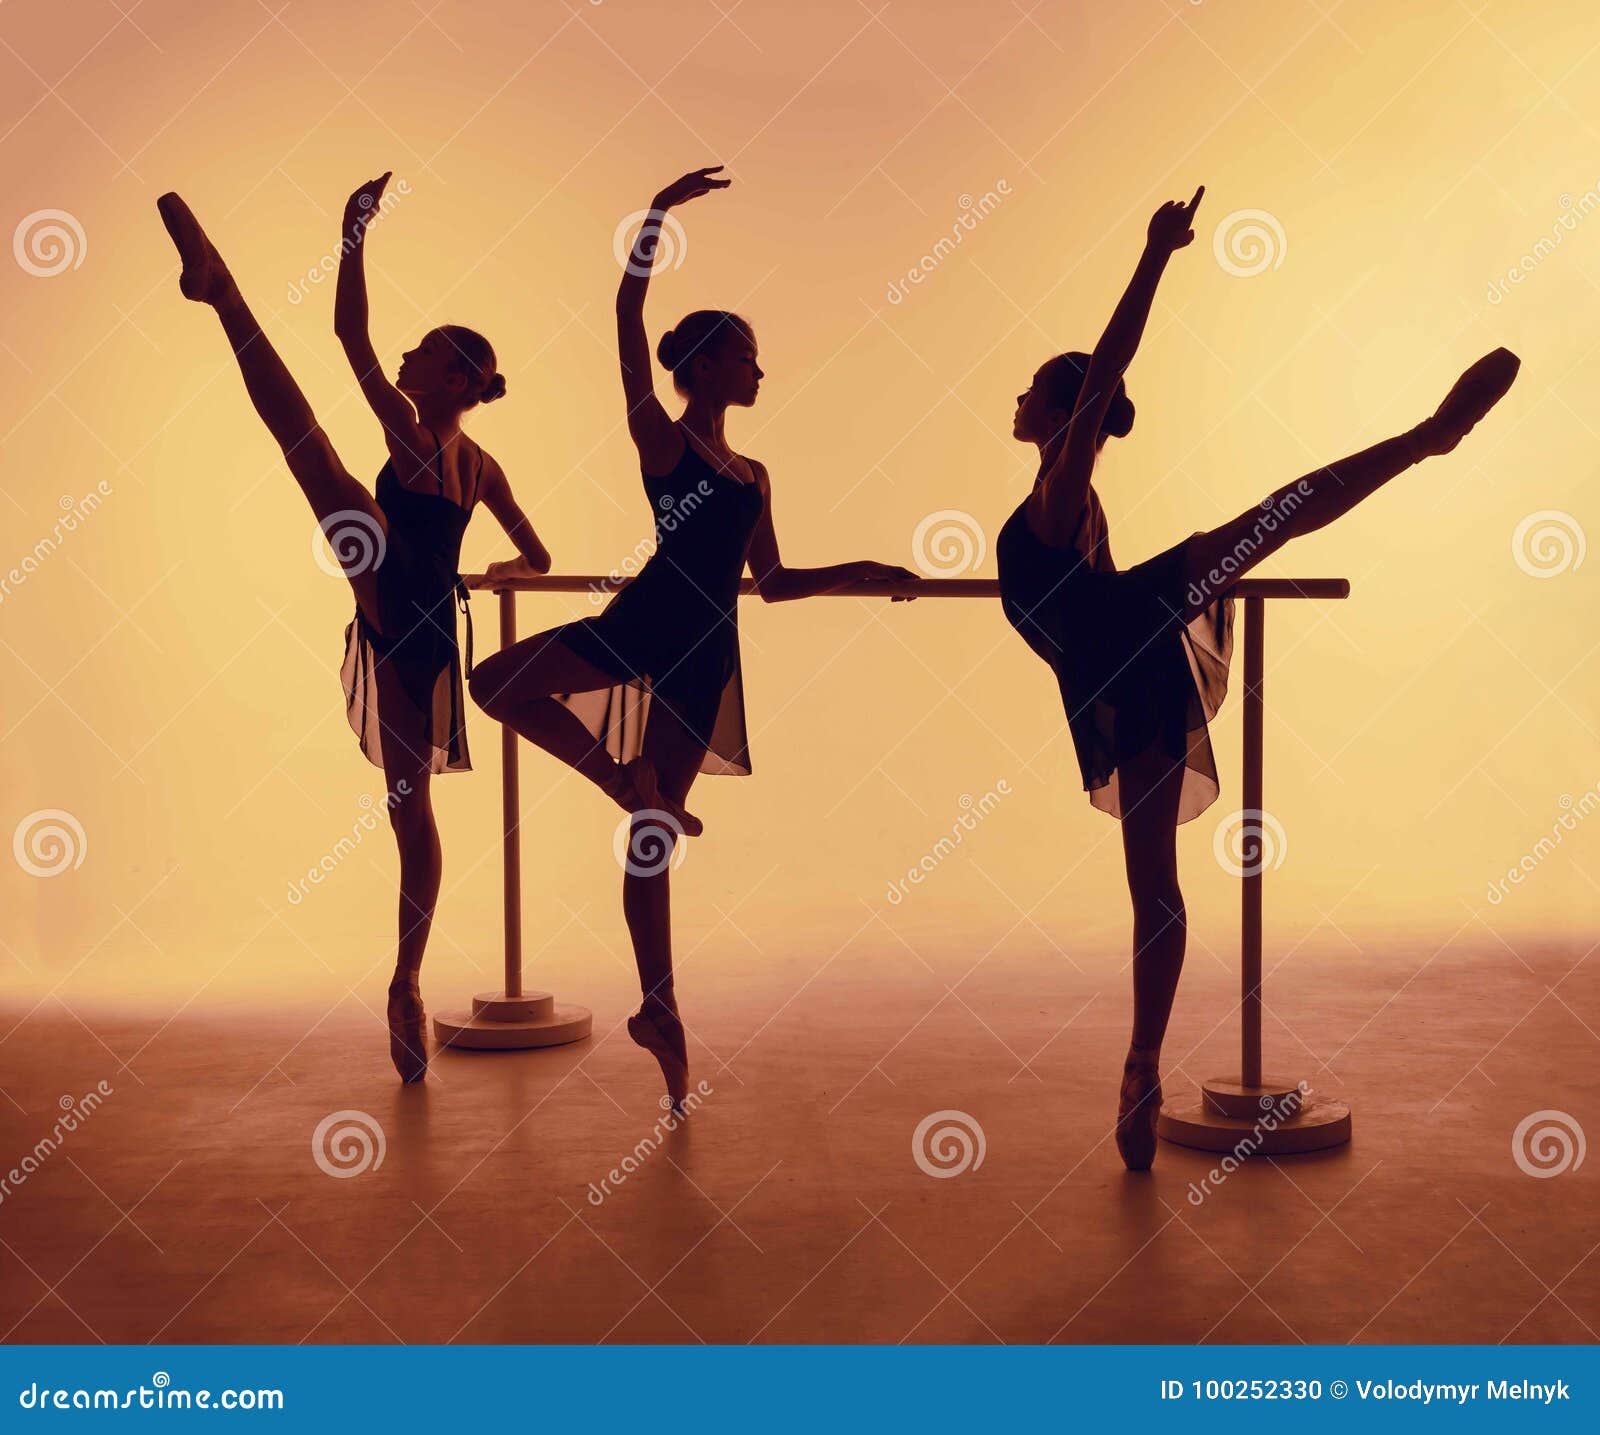 How To Photograph Ballerinas?